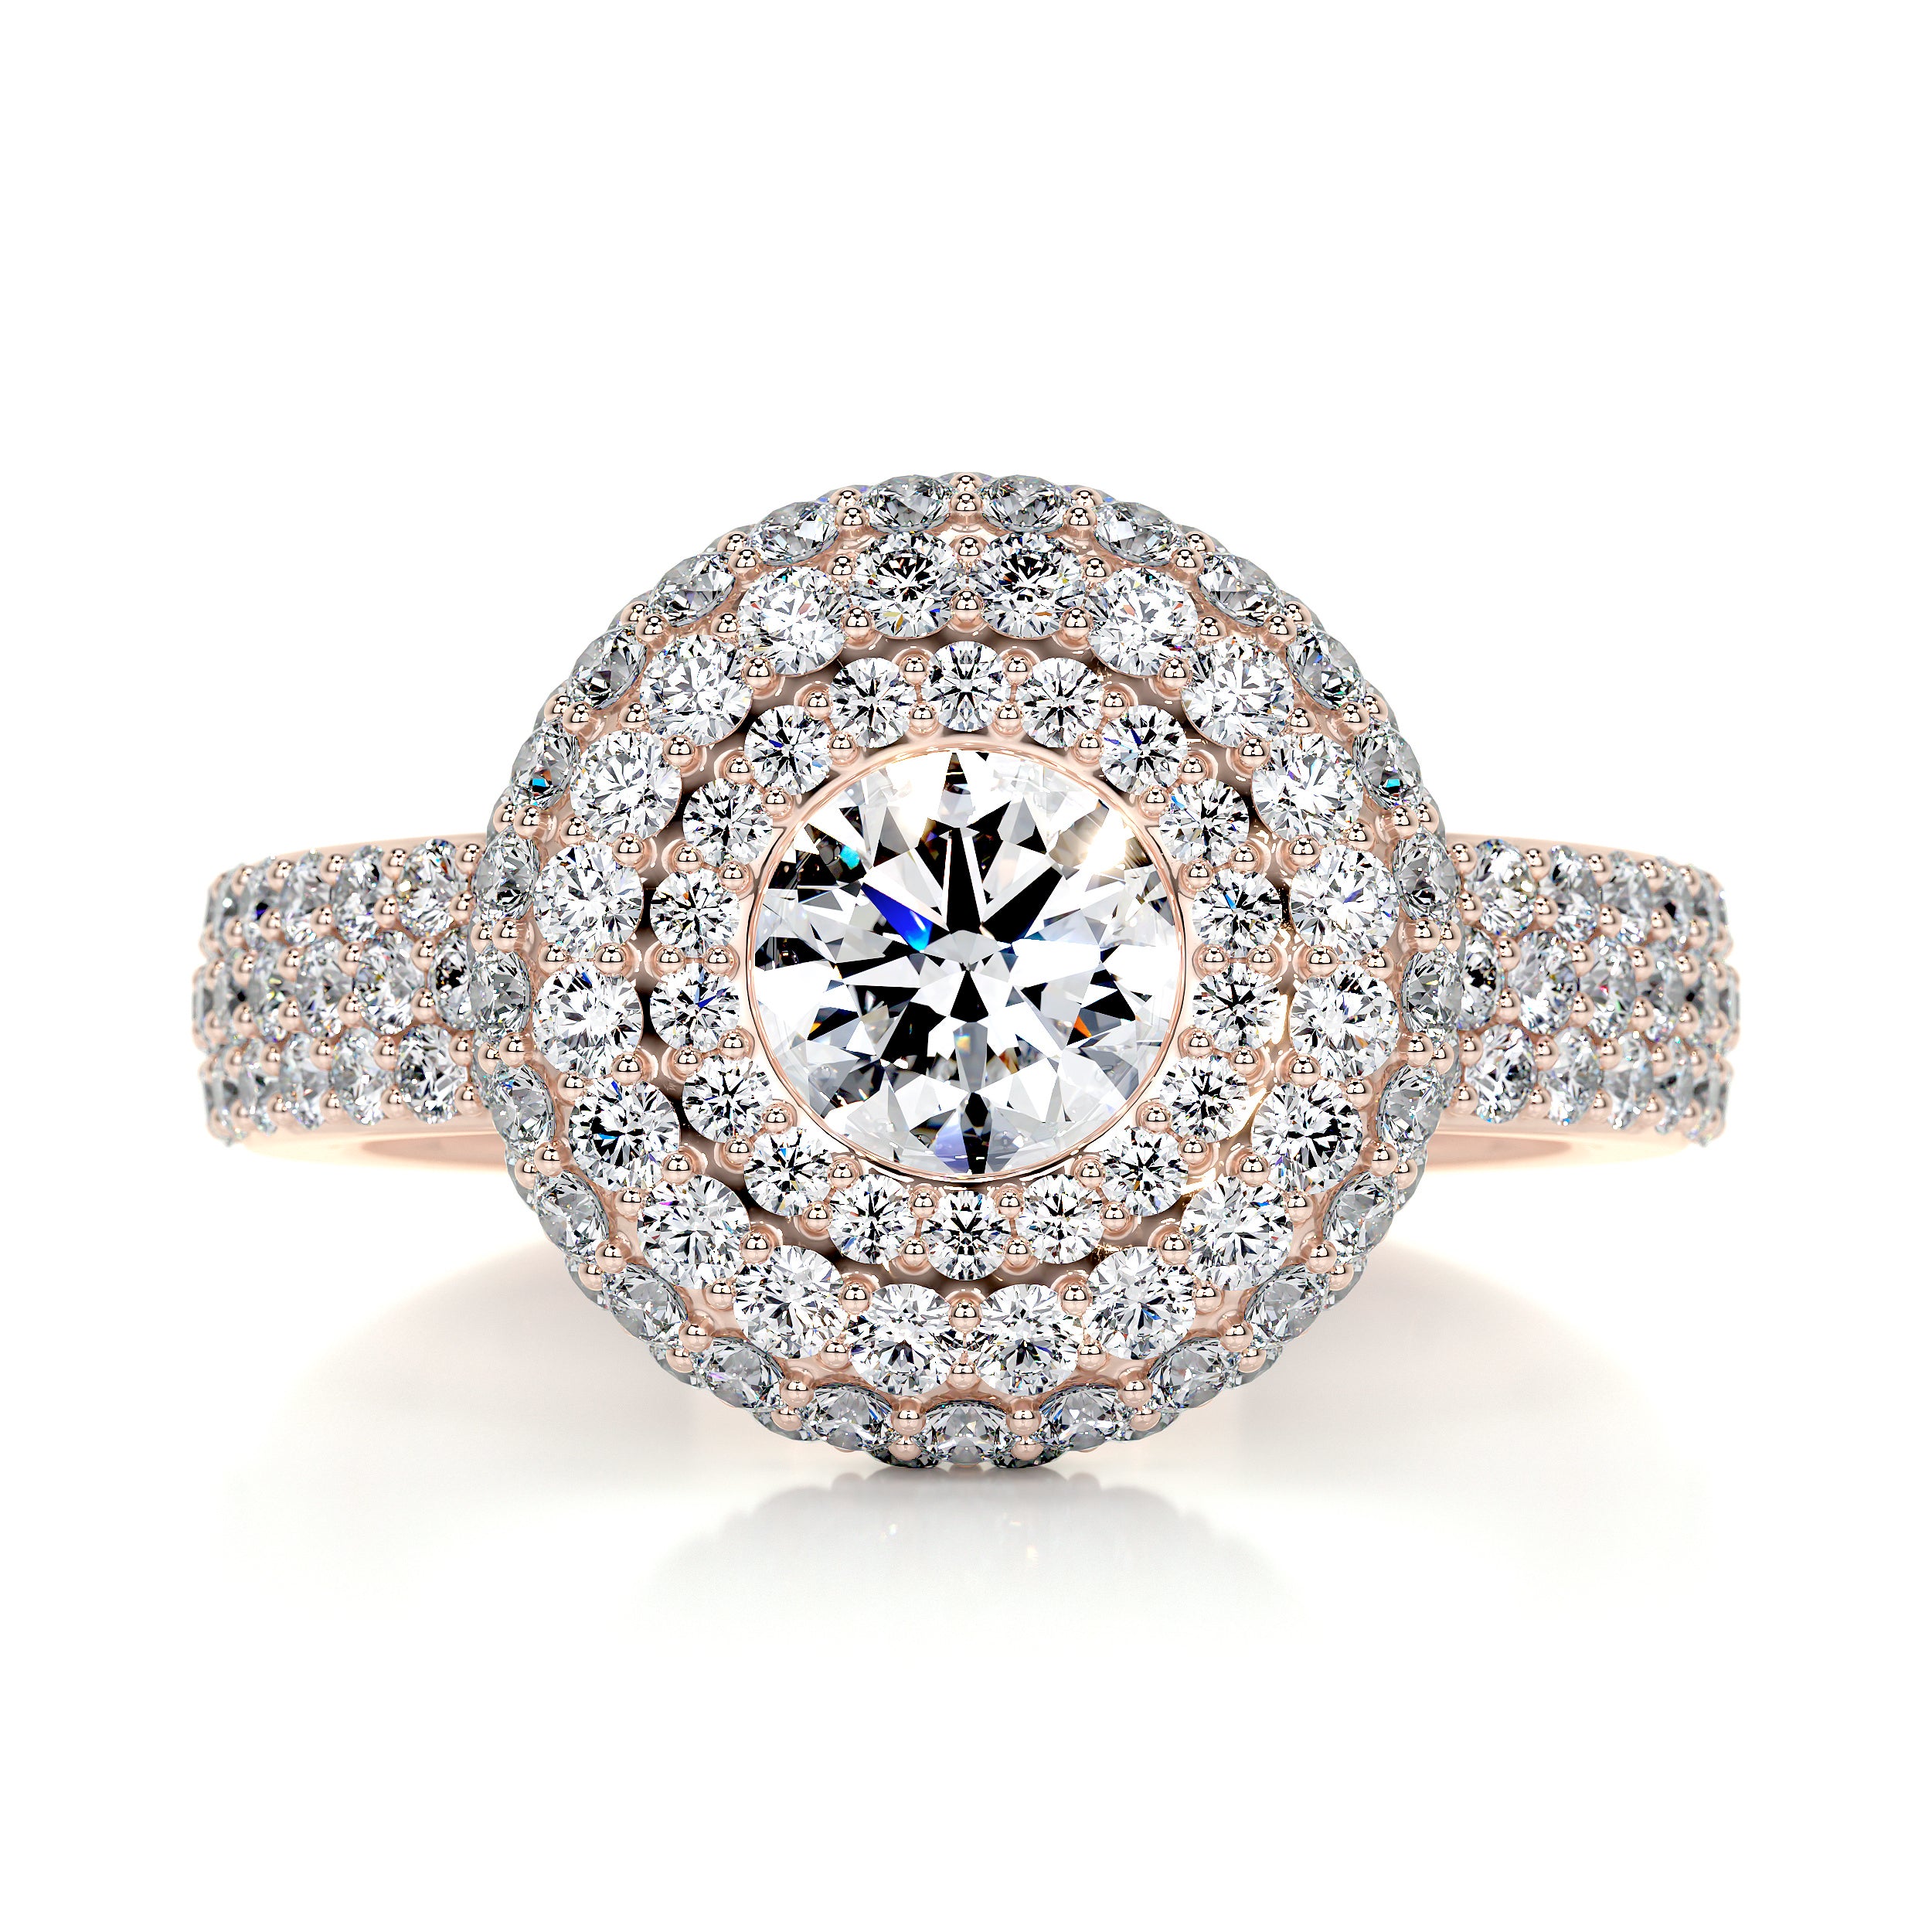 Reagan Diamond Engagement Ring   (2.25 Carat) -14K Rose Gold